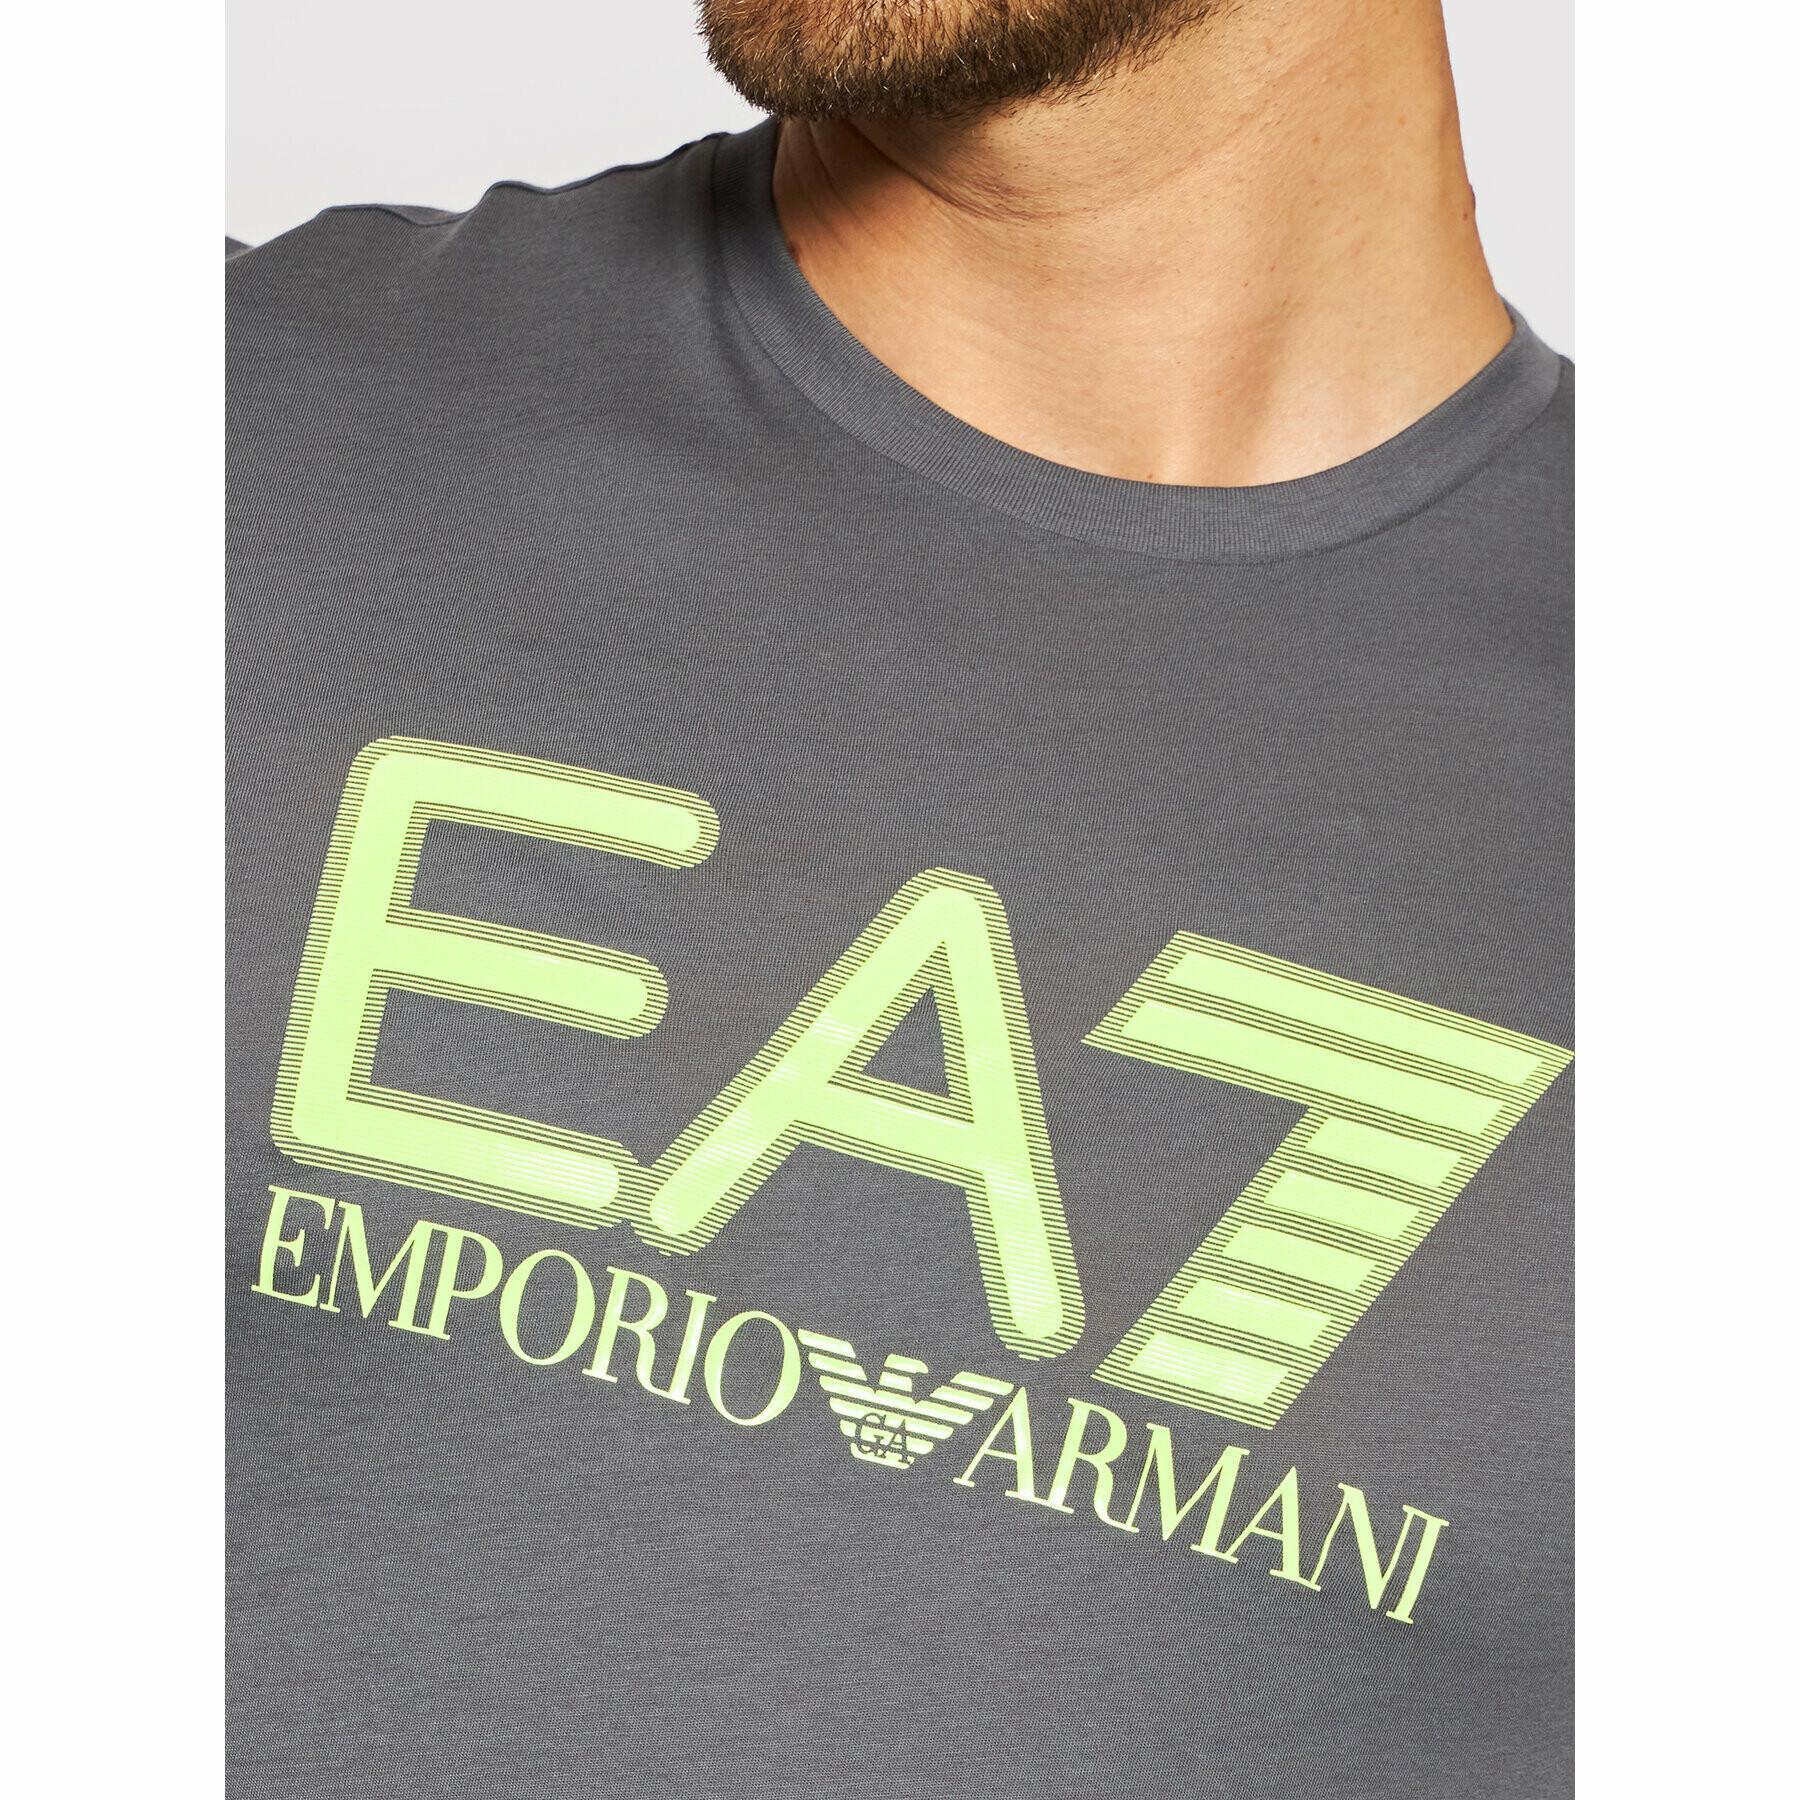 Koszulka EA7 Emporio Armani 6KPT81-PJM9Z gris